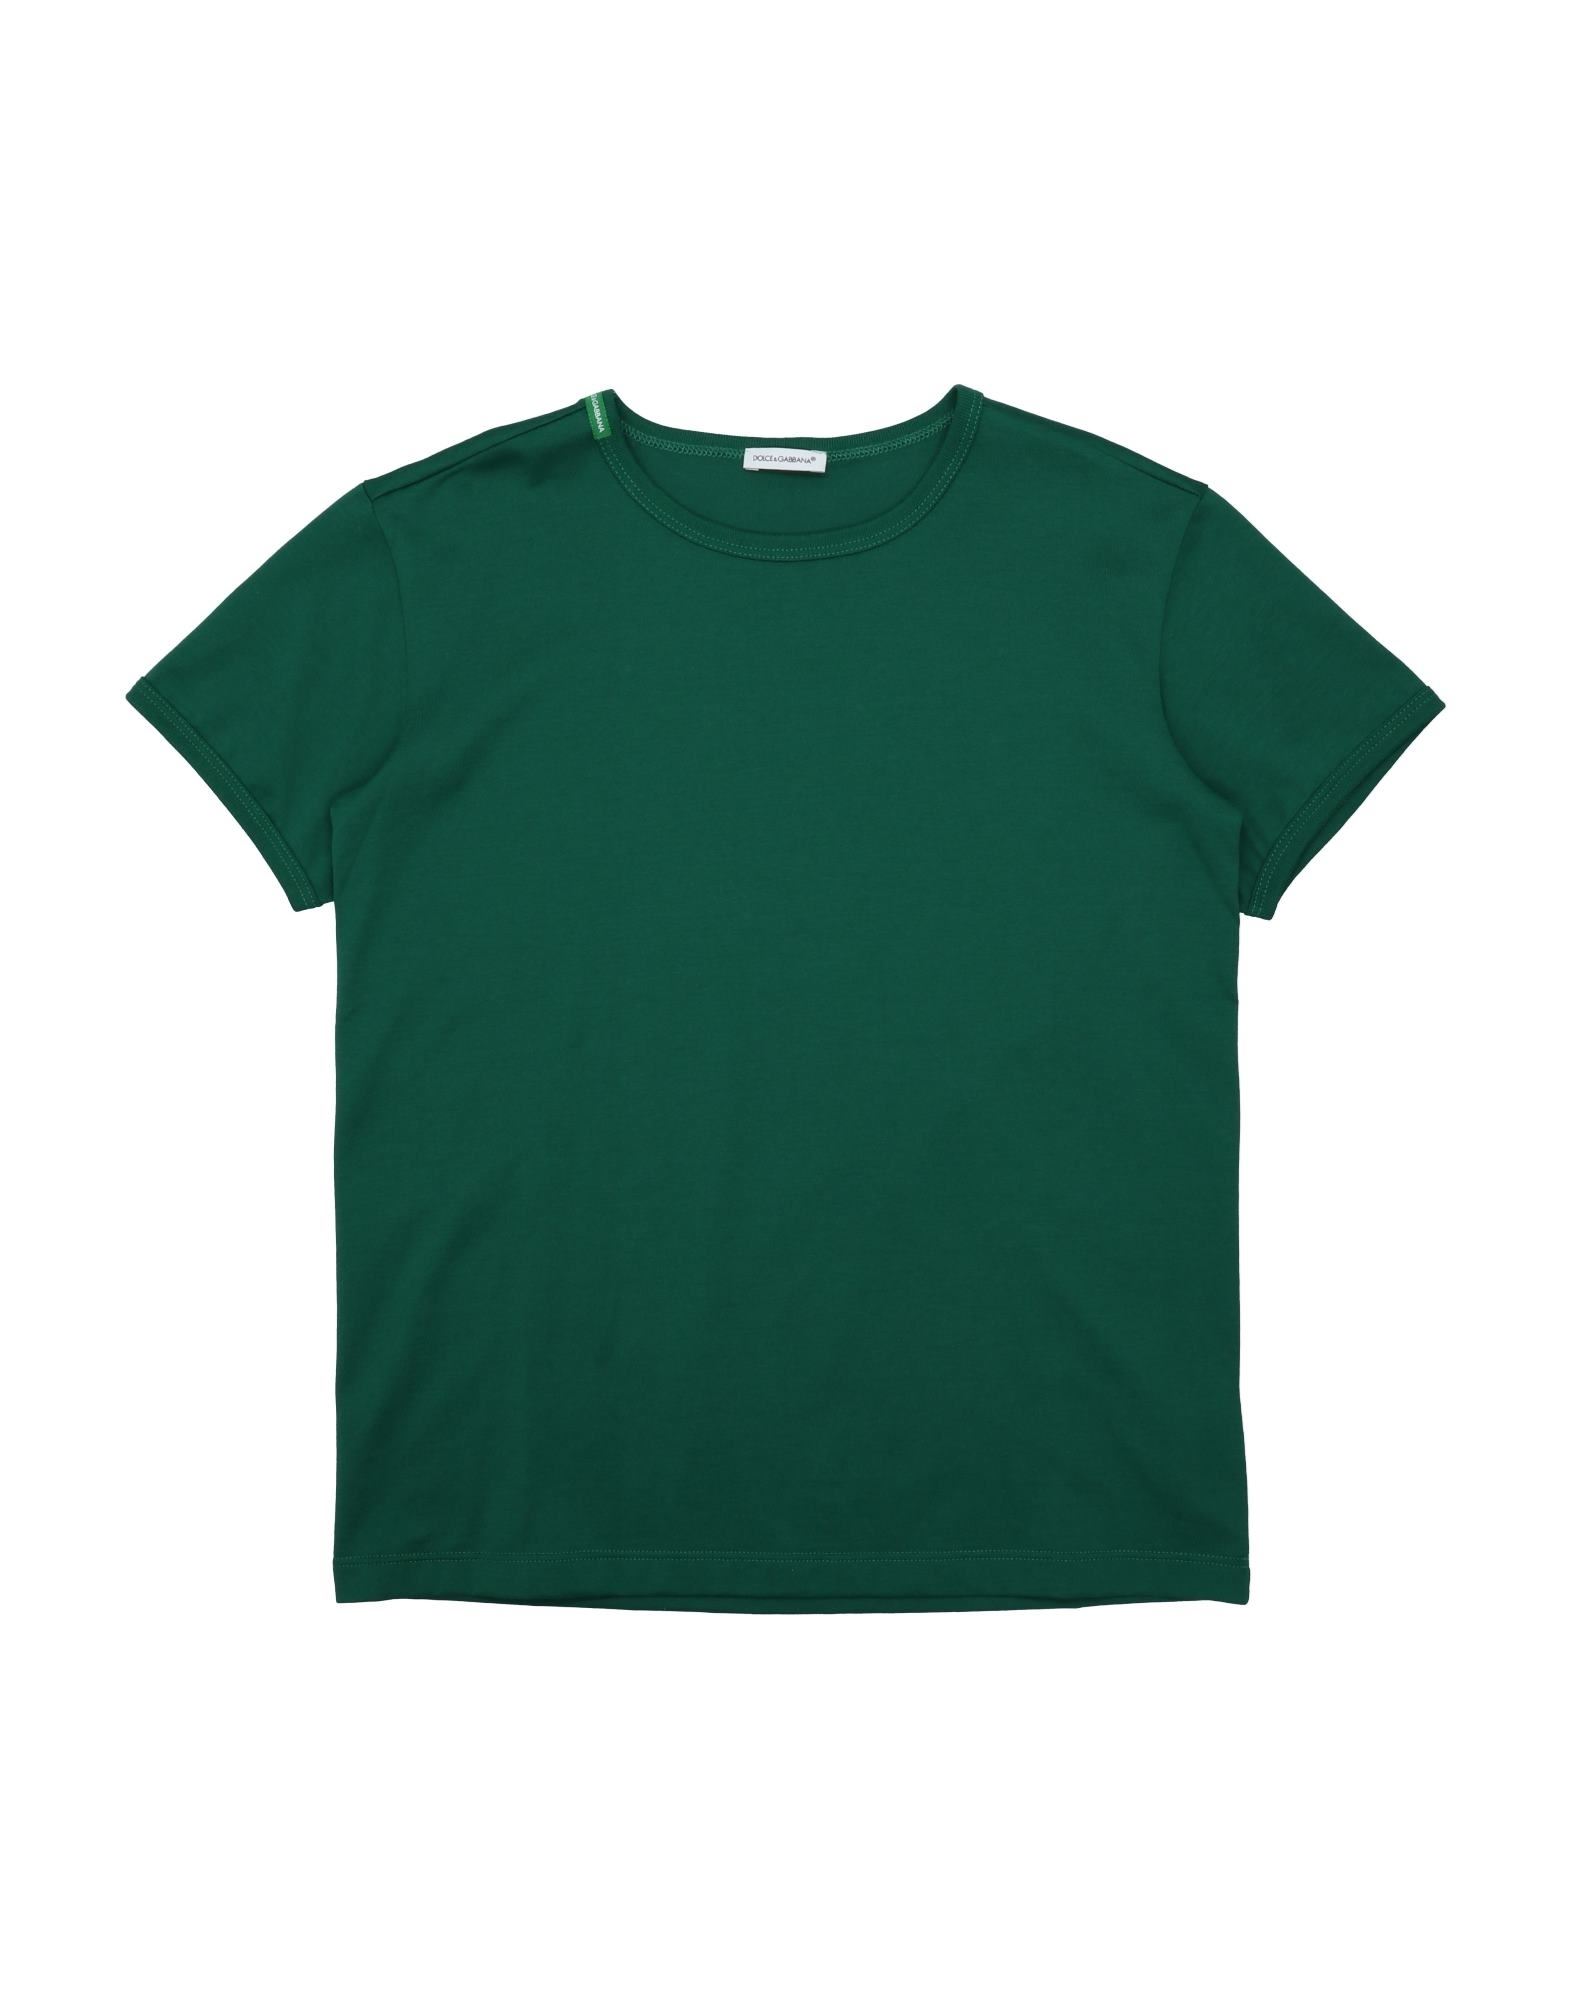 Dolce & Gabbana Kids' T-shirts In Dark Green